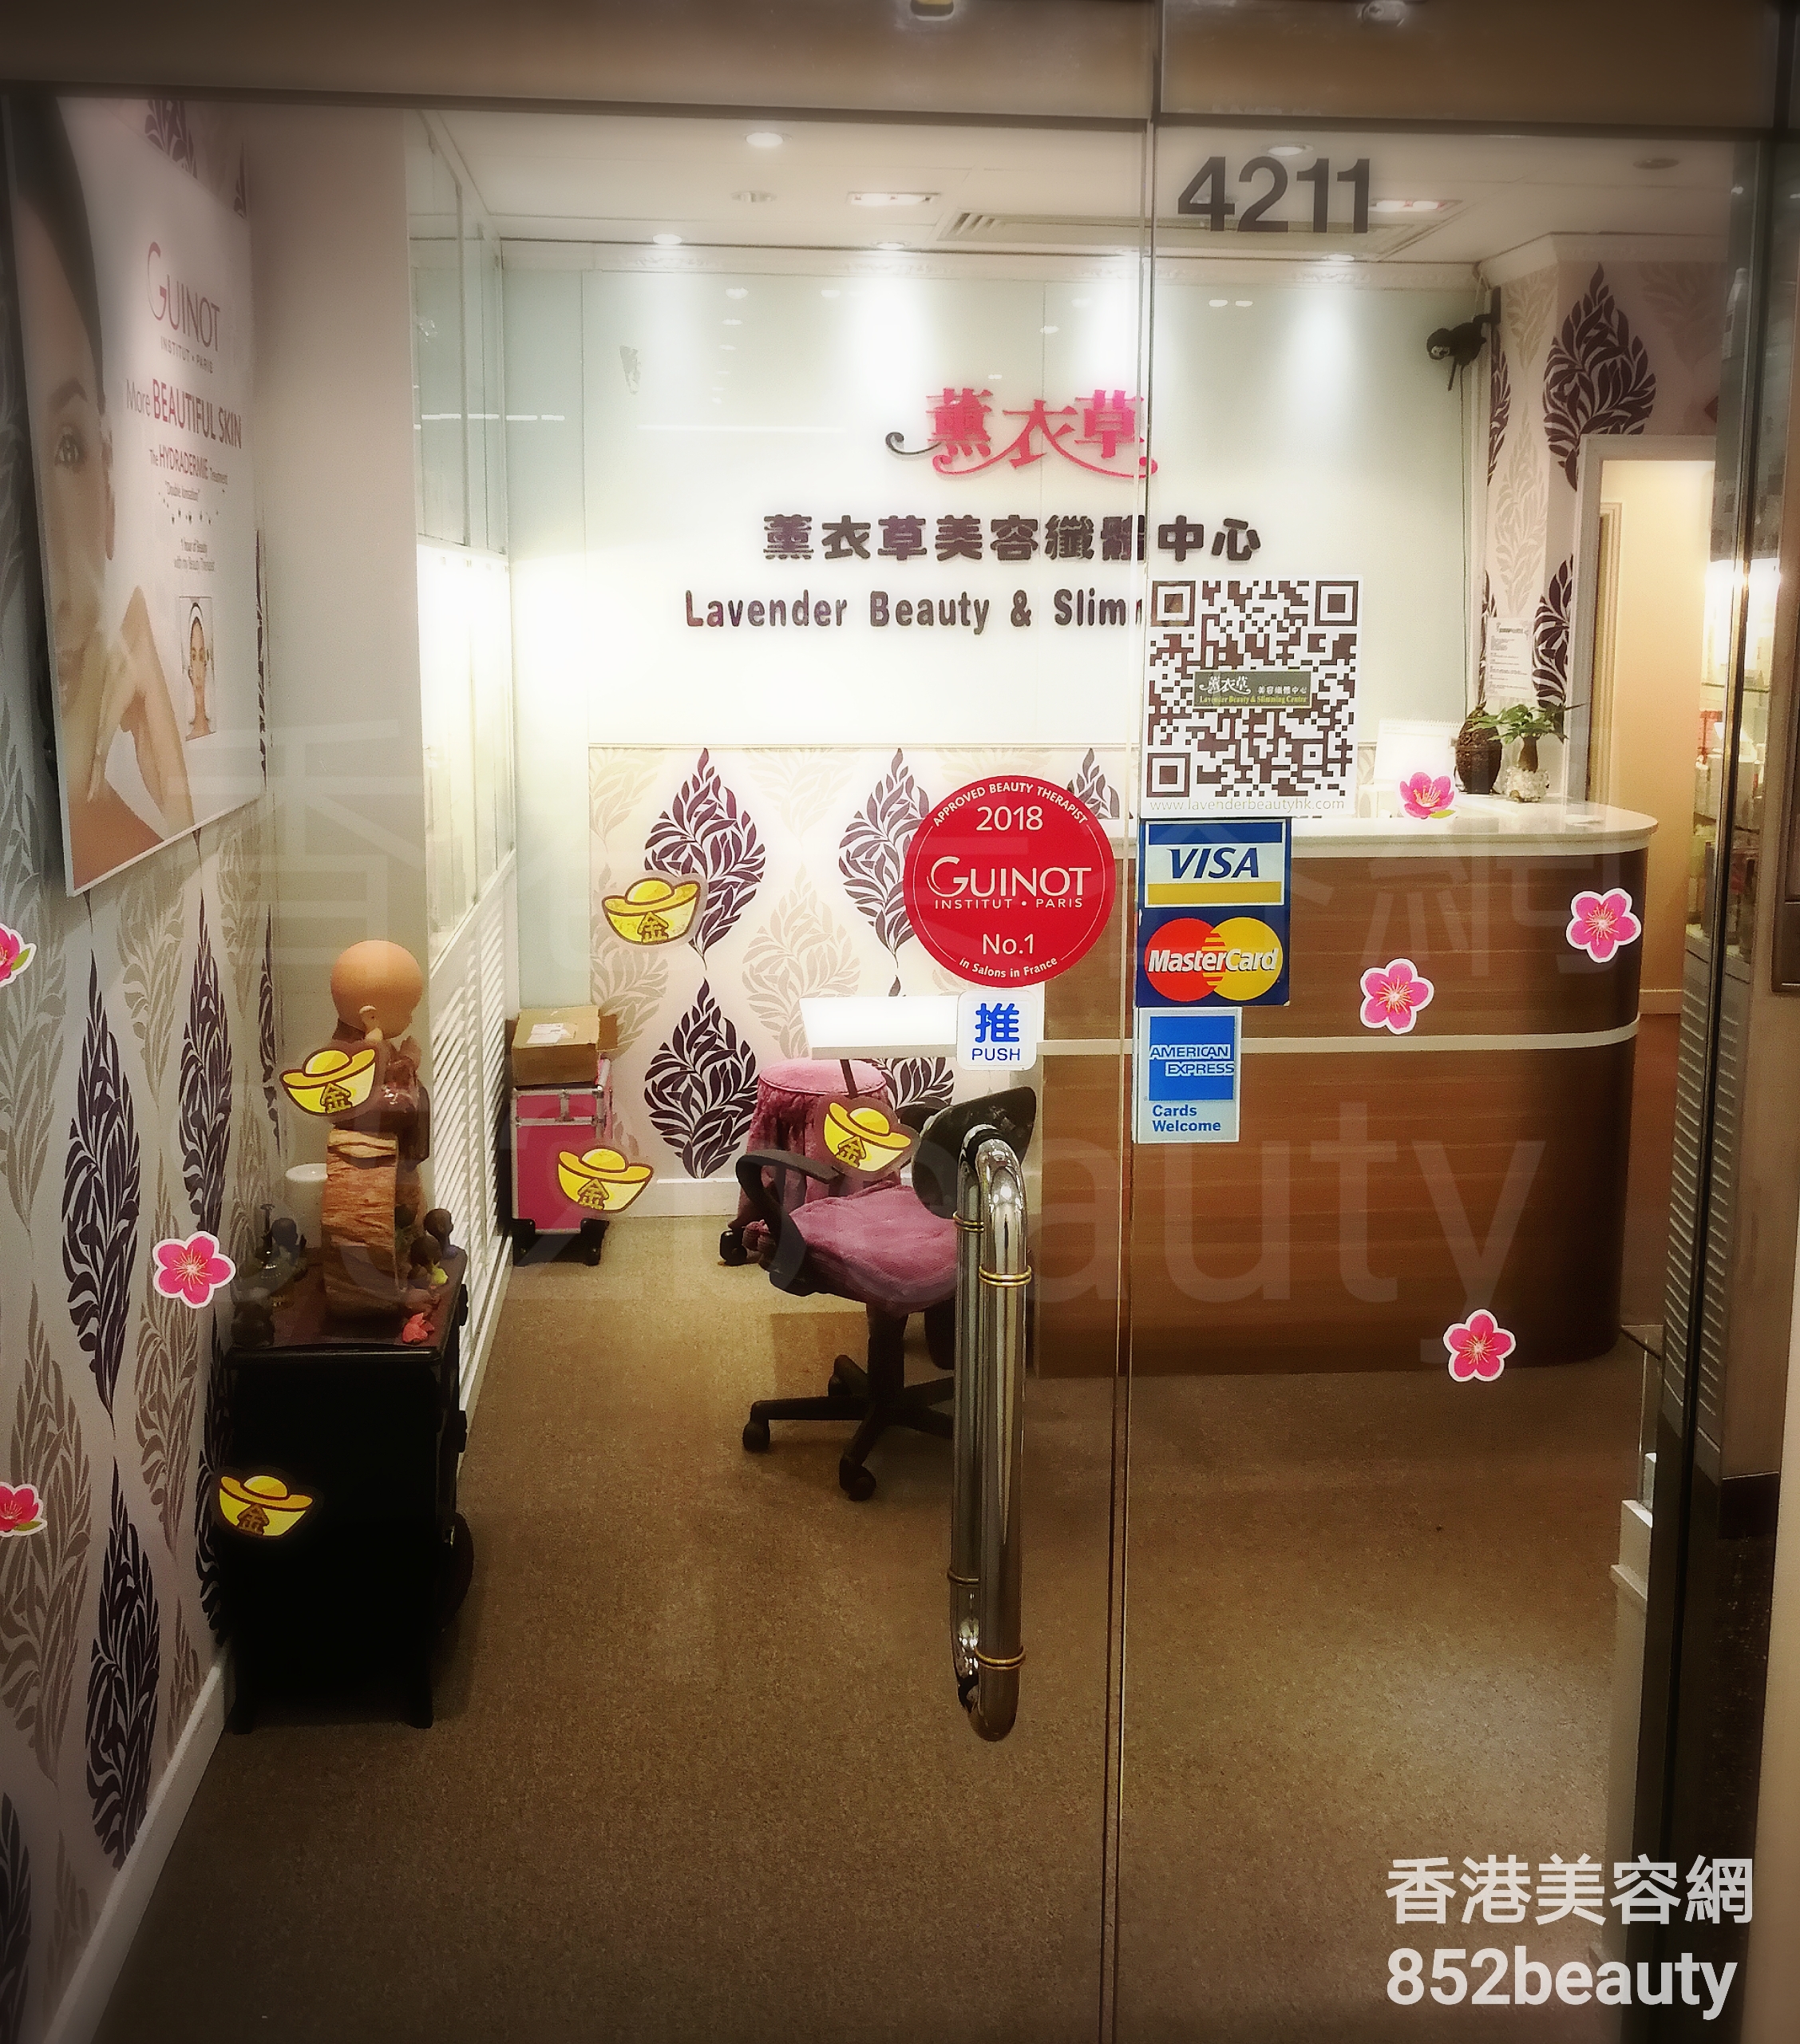 香港美容網 Hong Kong Beauty Salon 美容院 / 美容師: 薰衣草美容纖體中心